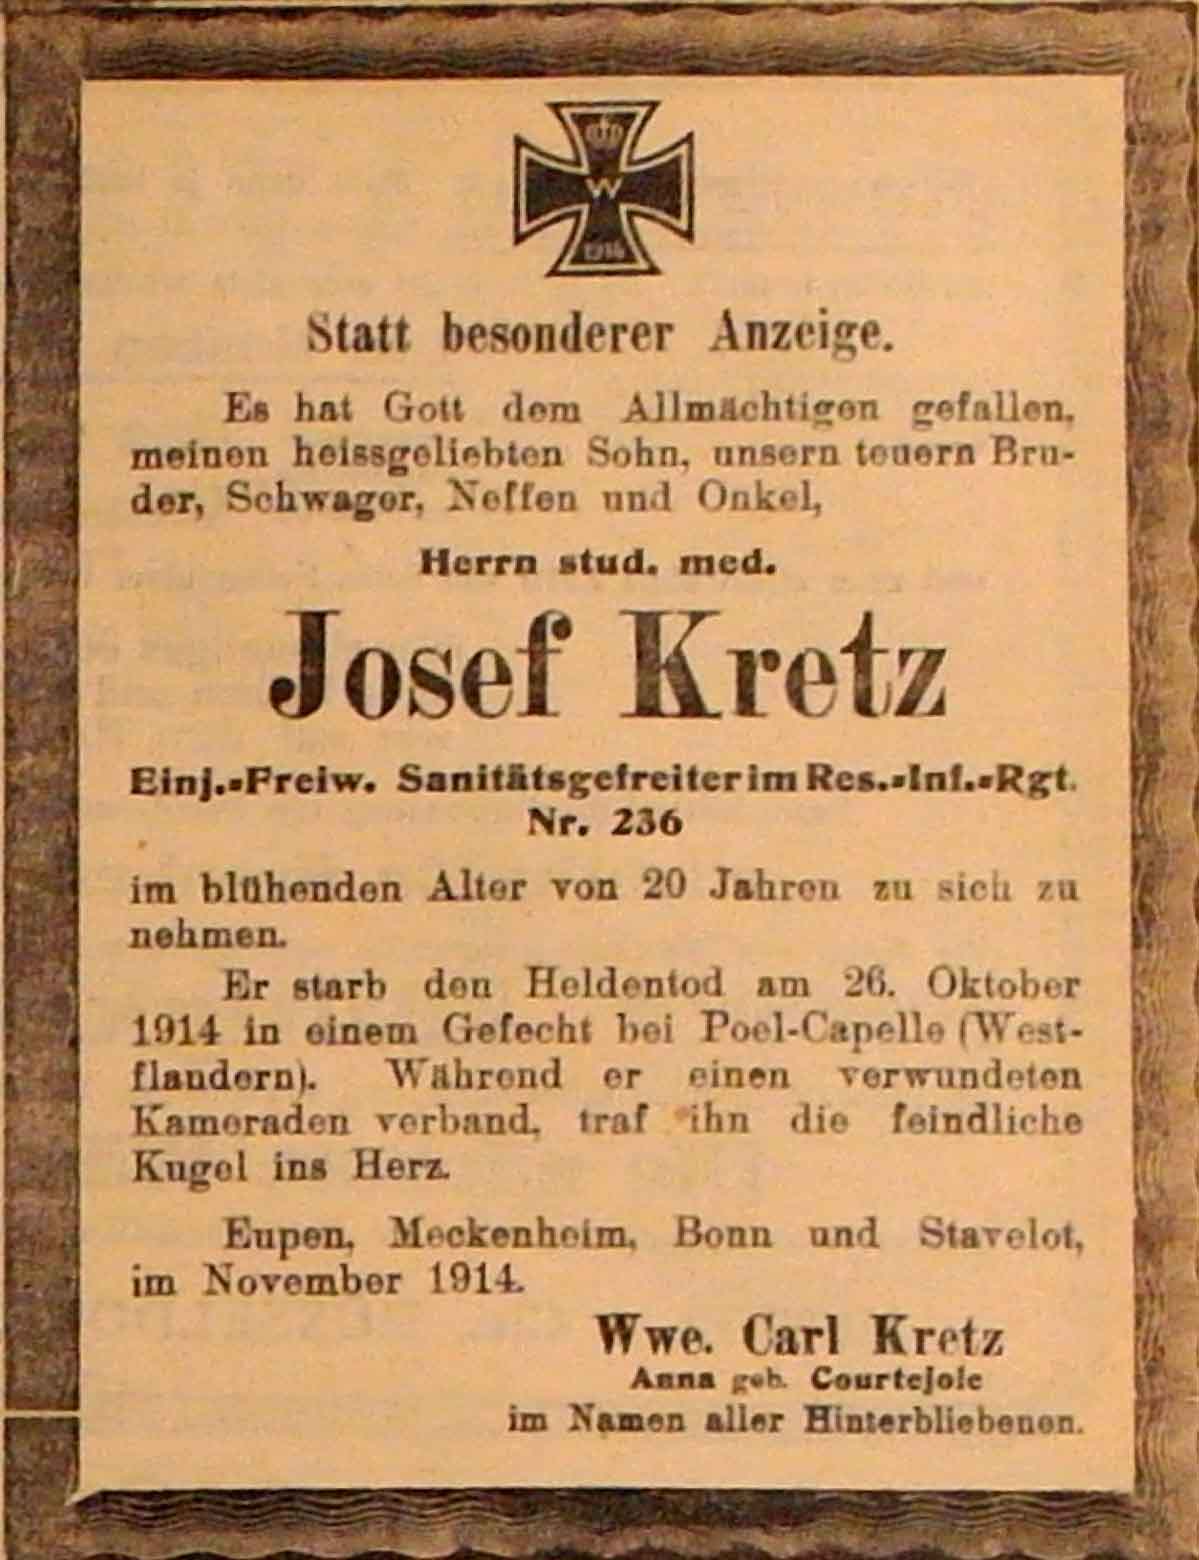 Anzeige im General-Anzeiger vom 17. November 1914